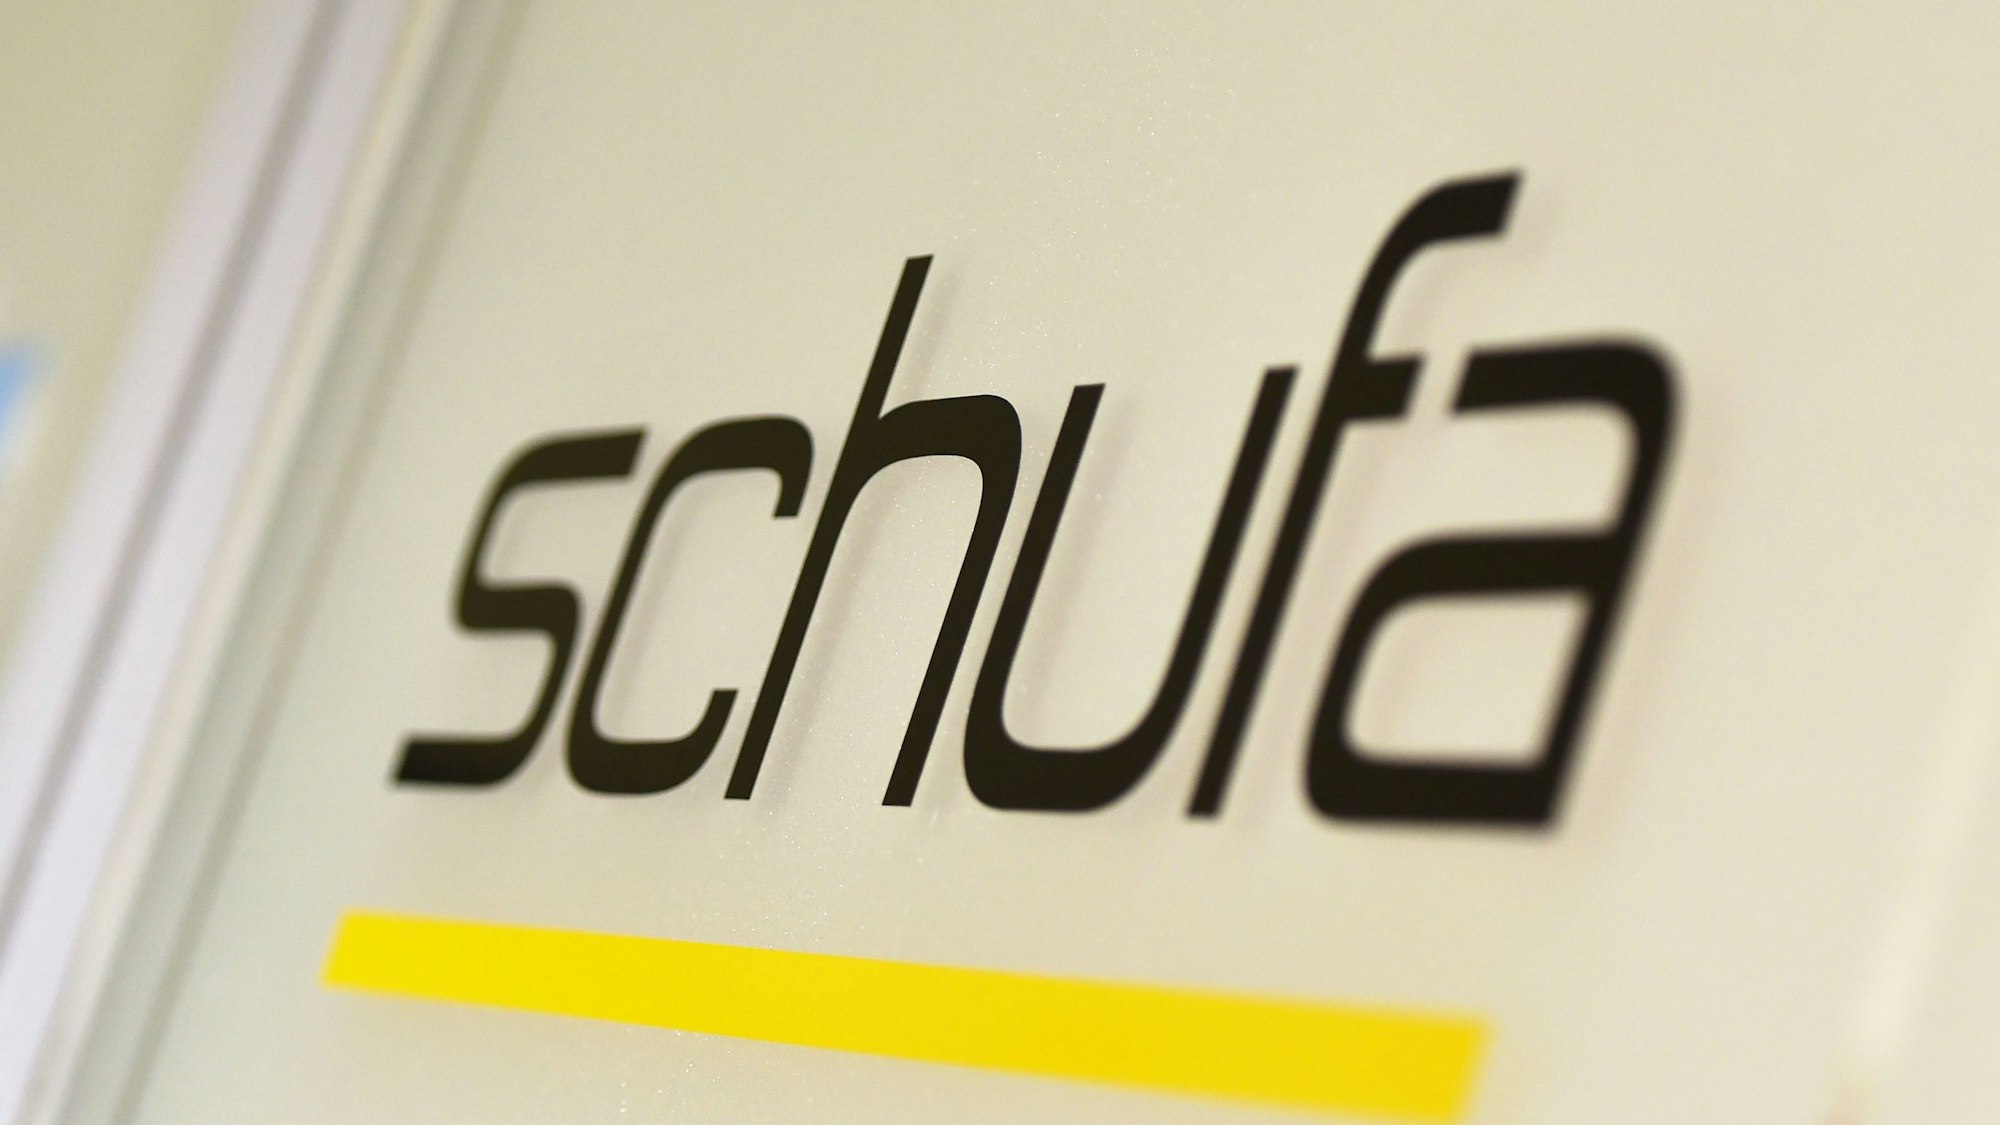 Hier sieht man den Schufa-Schriftzug, aufgenommen an der Schufa Geschäftsstelle in Berlin.